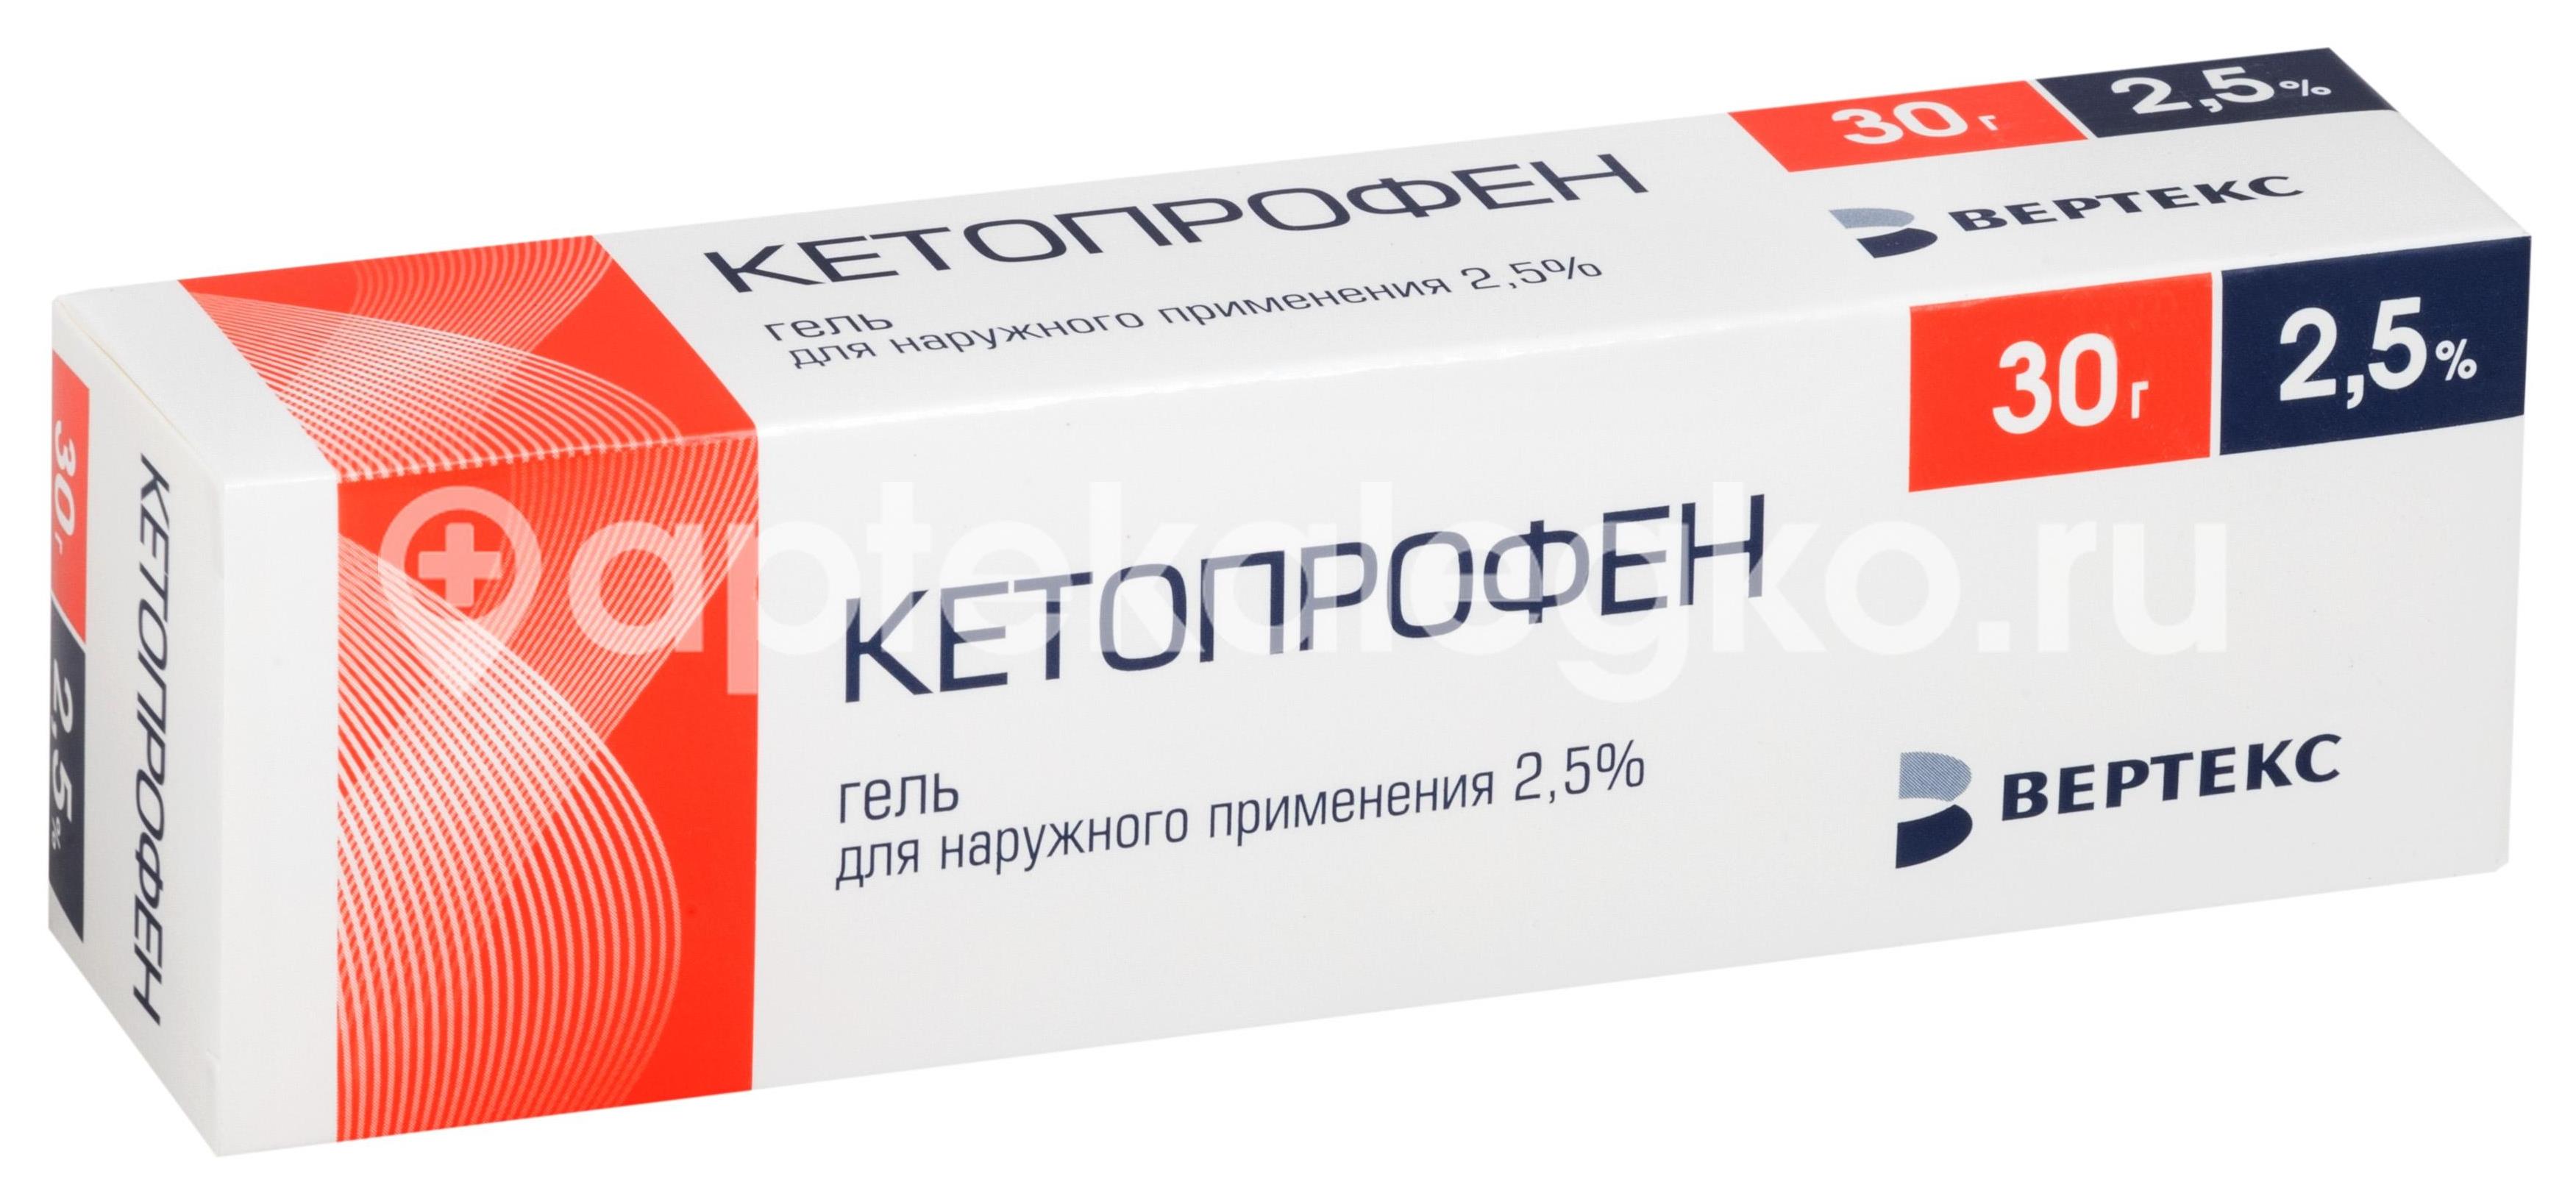 Кетопрофен-верте 2,5% 30г. гель - 1